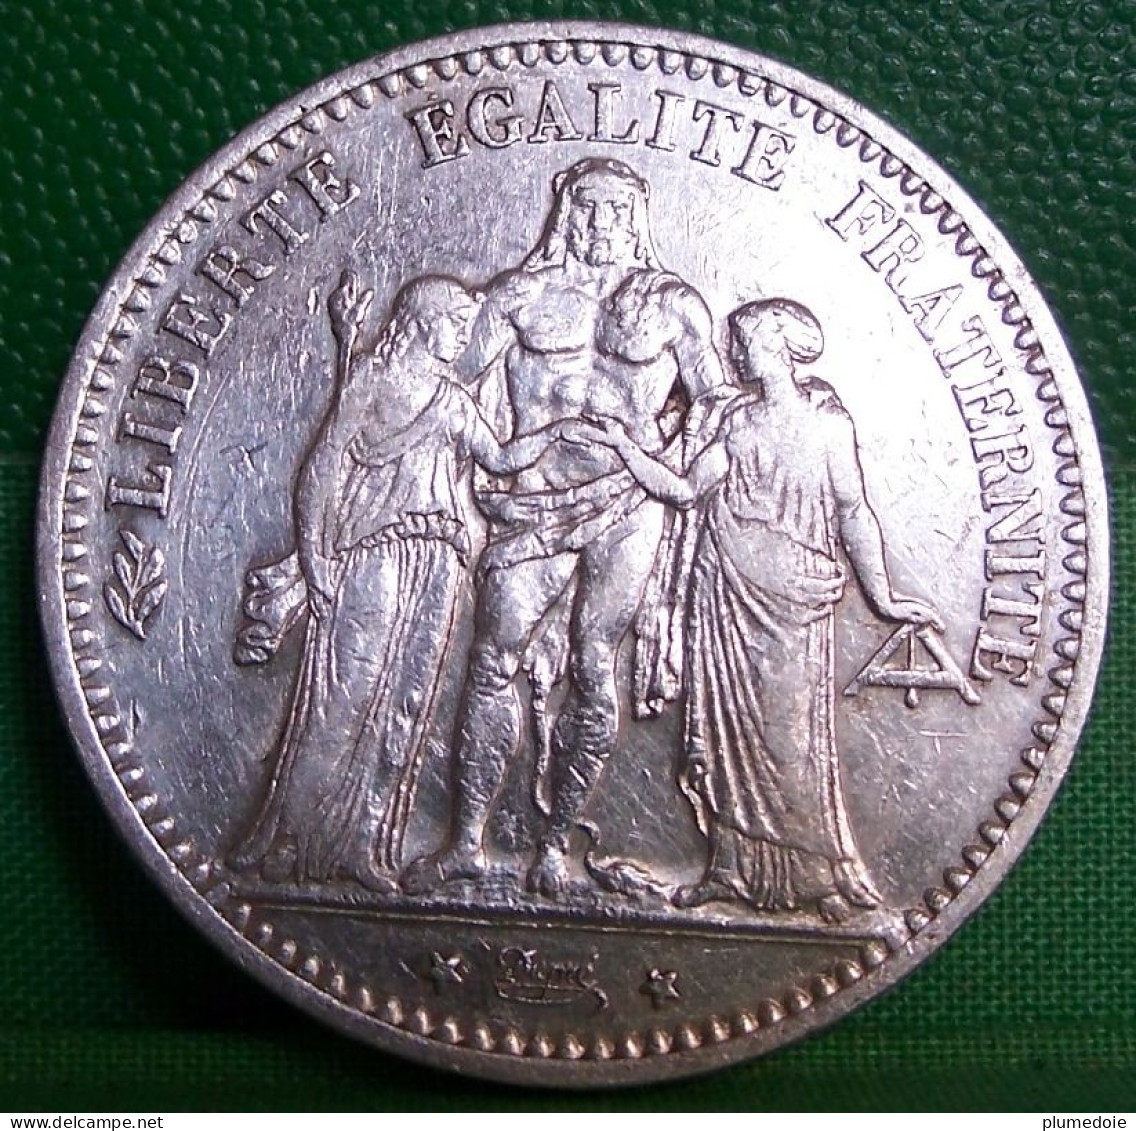 MONNAIE  5 FRANCS  HERCULE 1874 K BORDEAUX     Argent  III ème  REPUBLIQUE   FRANCE OLD SILVER COIN - 5 Francs